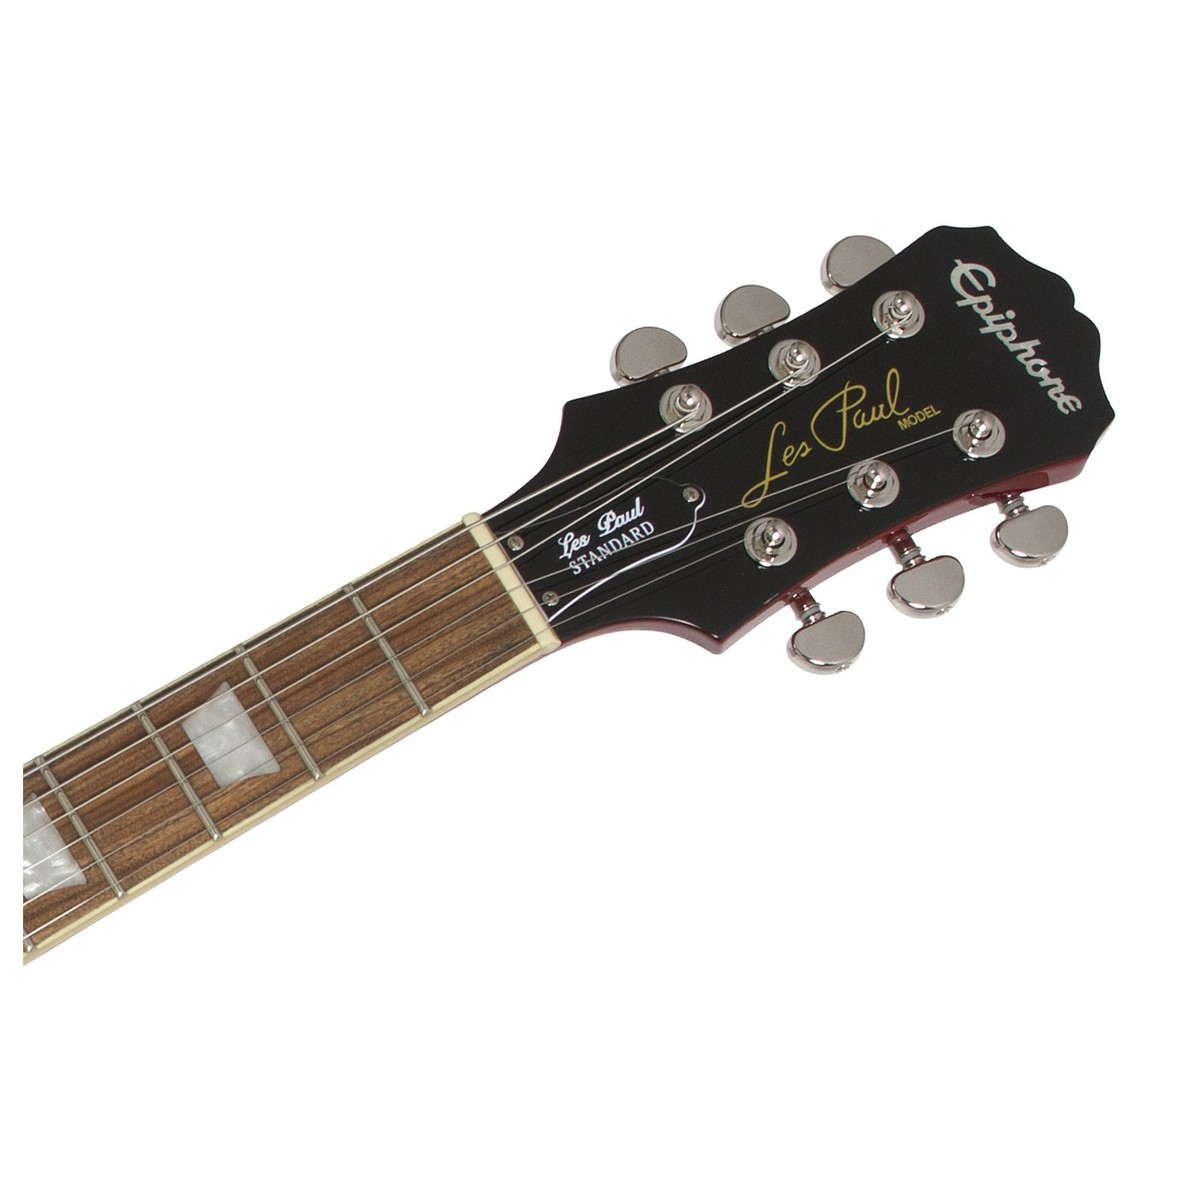 Epiphone Les Paul Standard Hh Ht Pf - Faded Cherry Sunburst - Guitarra eléctrica de corte único. - Variation 5